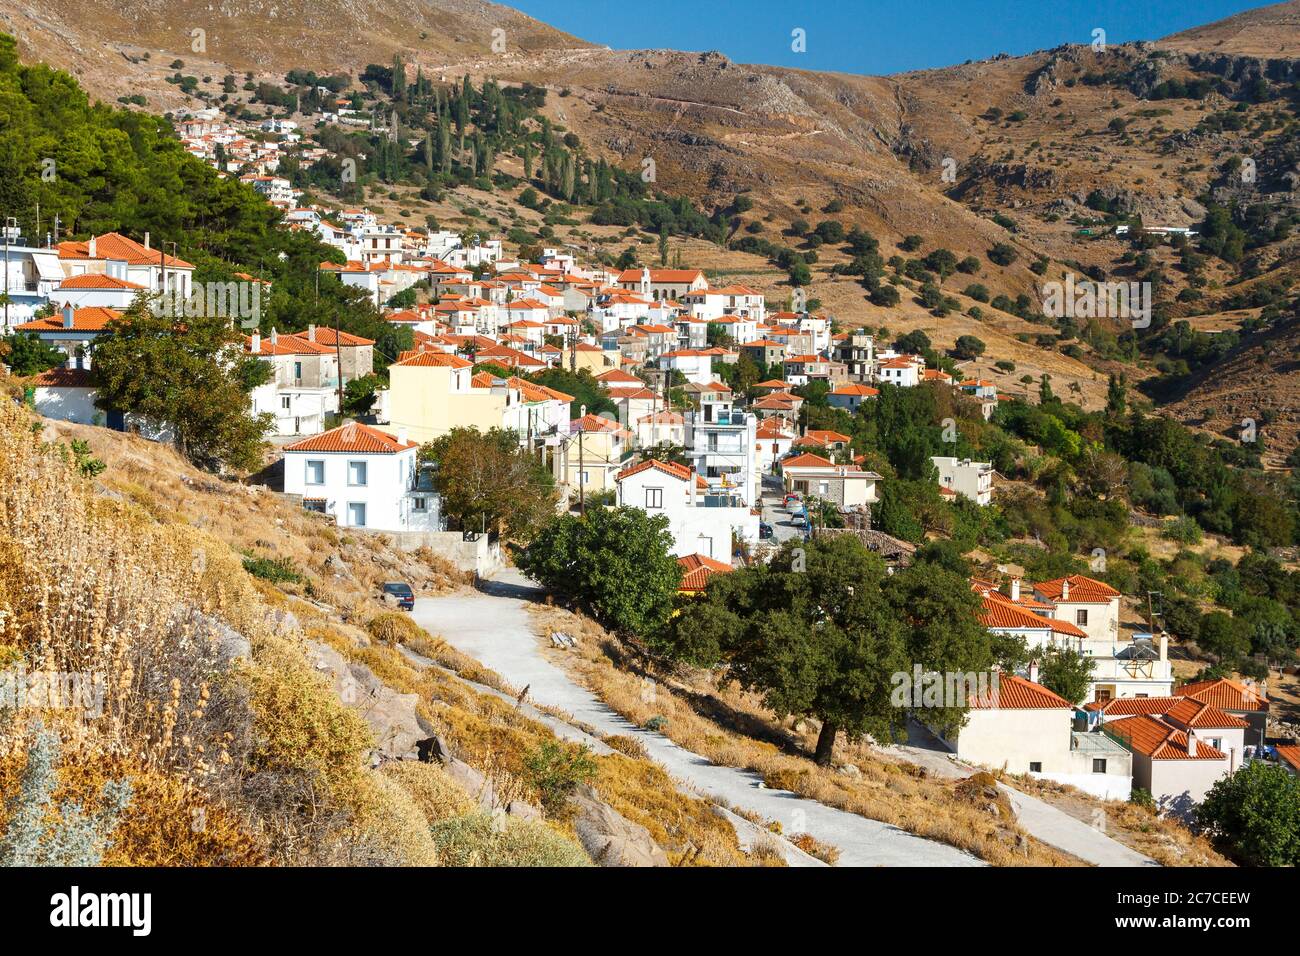 La aldea de montaña de Agra, en el oeste de la isla de Lesbos, Grecia. Foto de stock